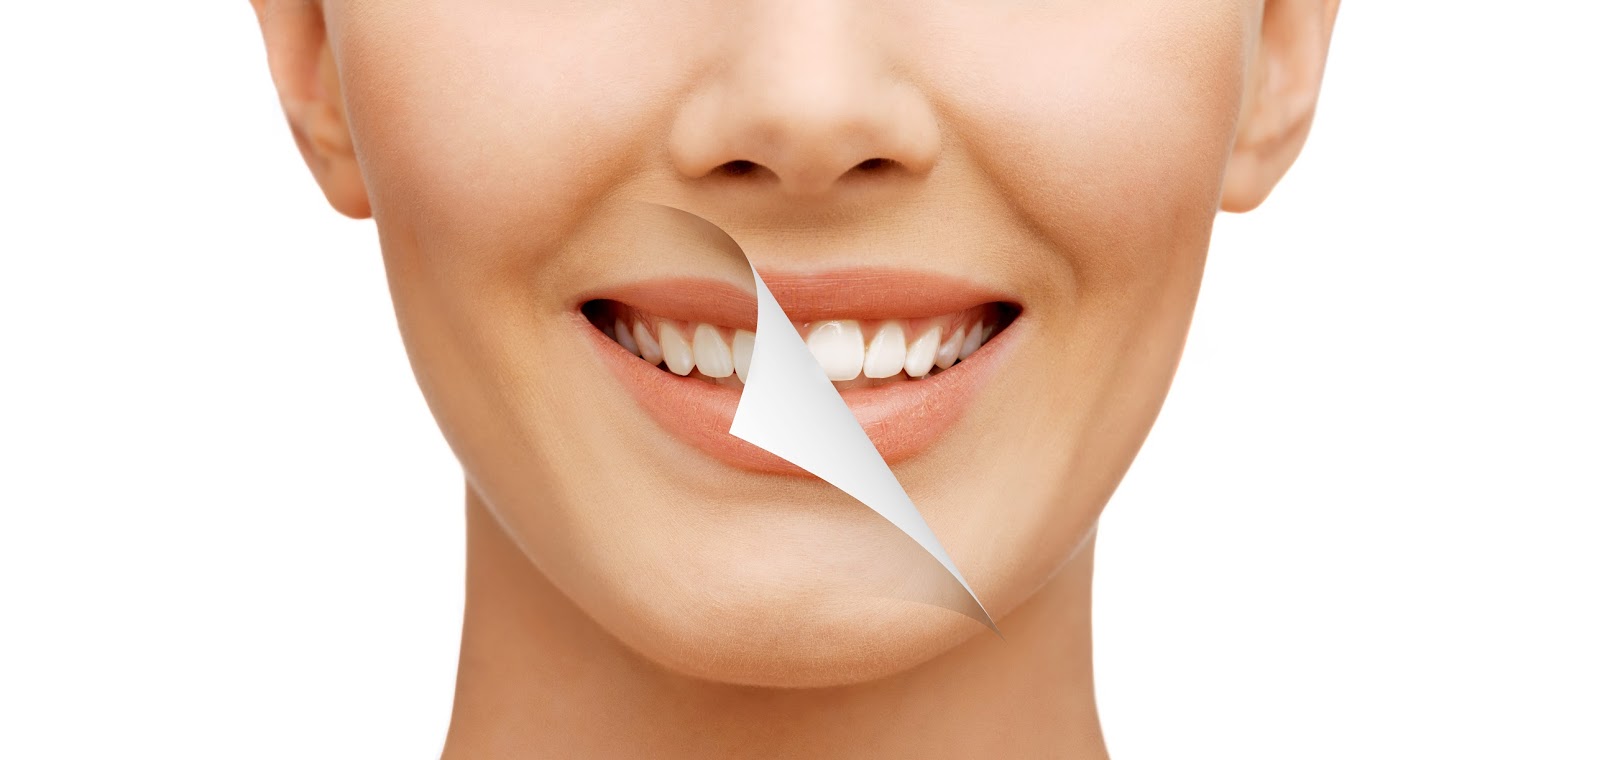 Професійне відбілювання зубів зі знижкою в клініці Експерт 